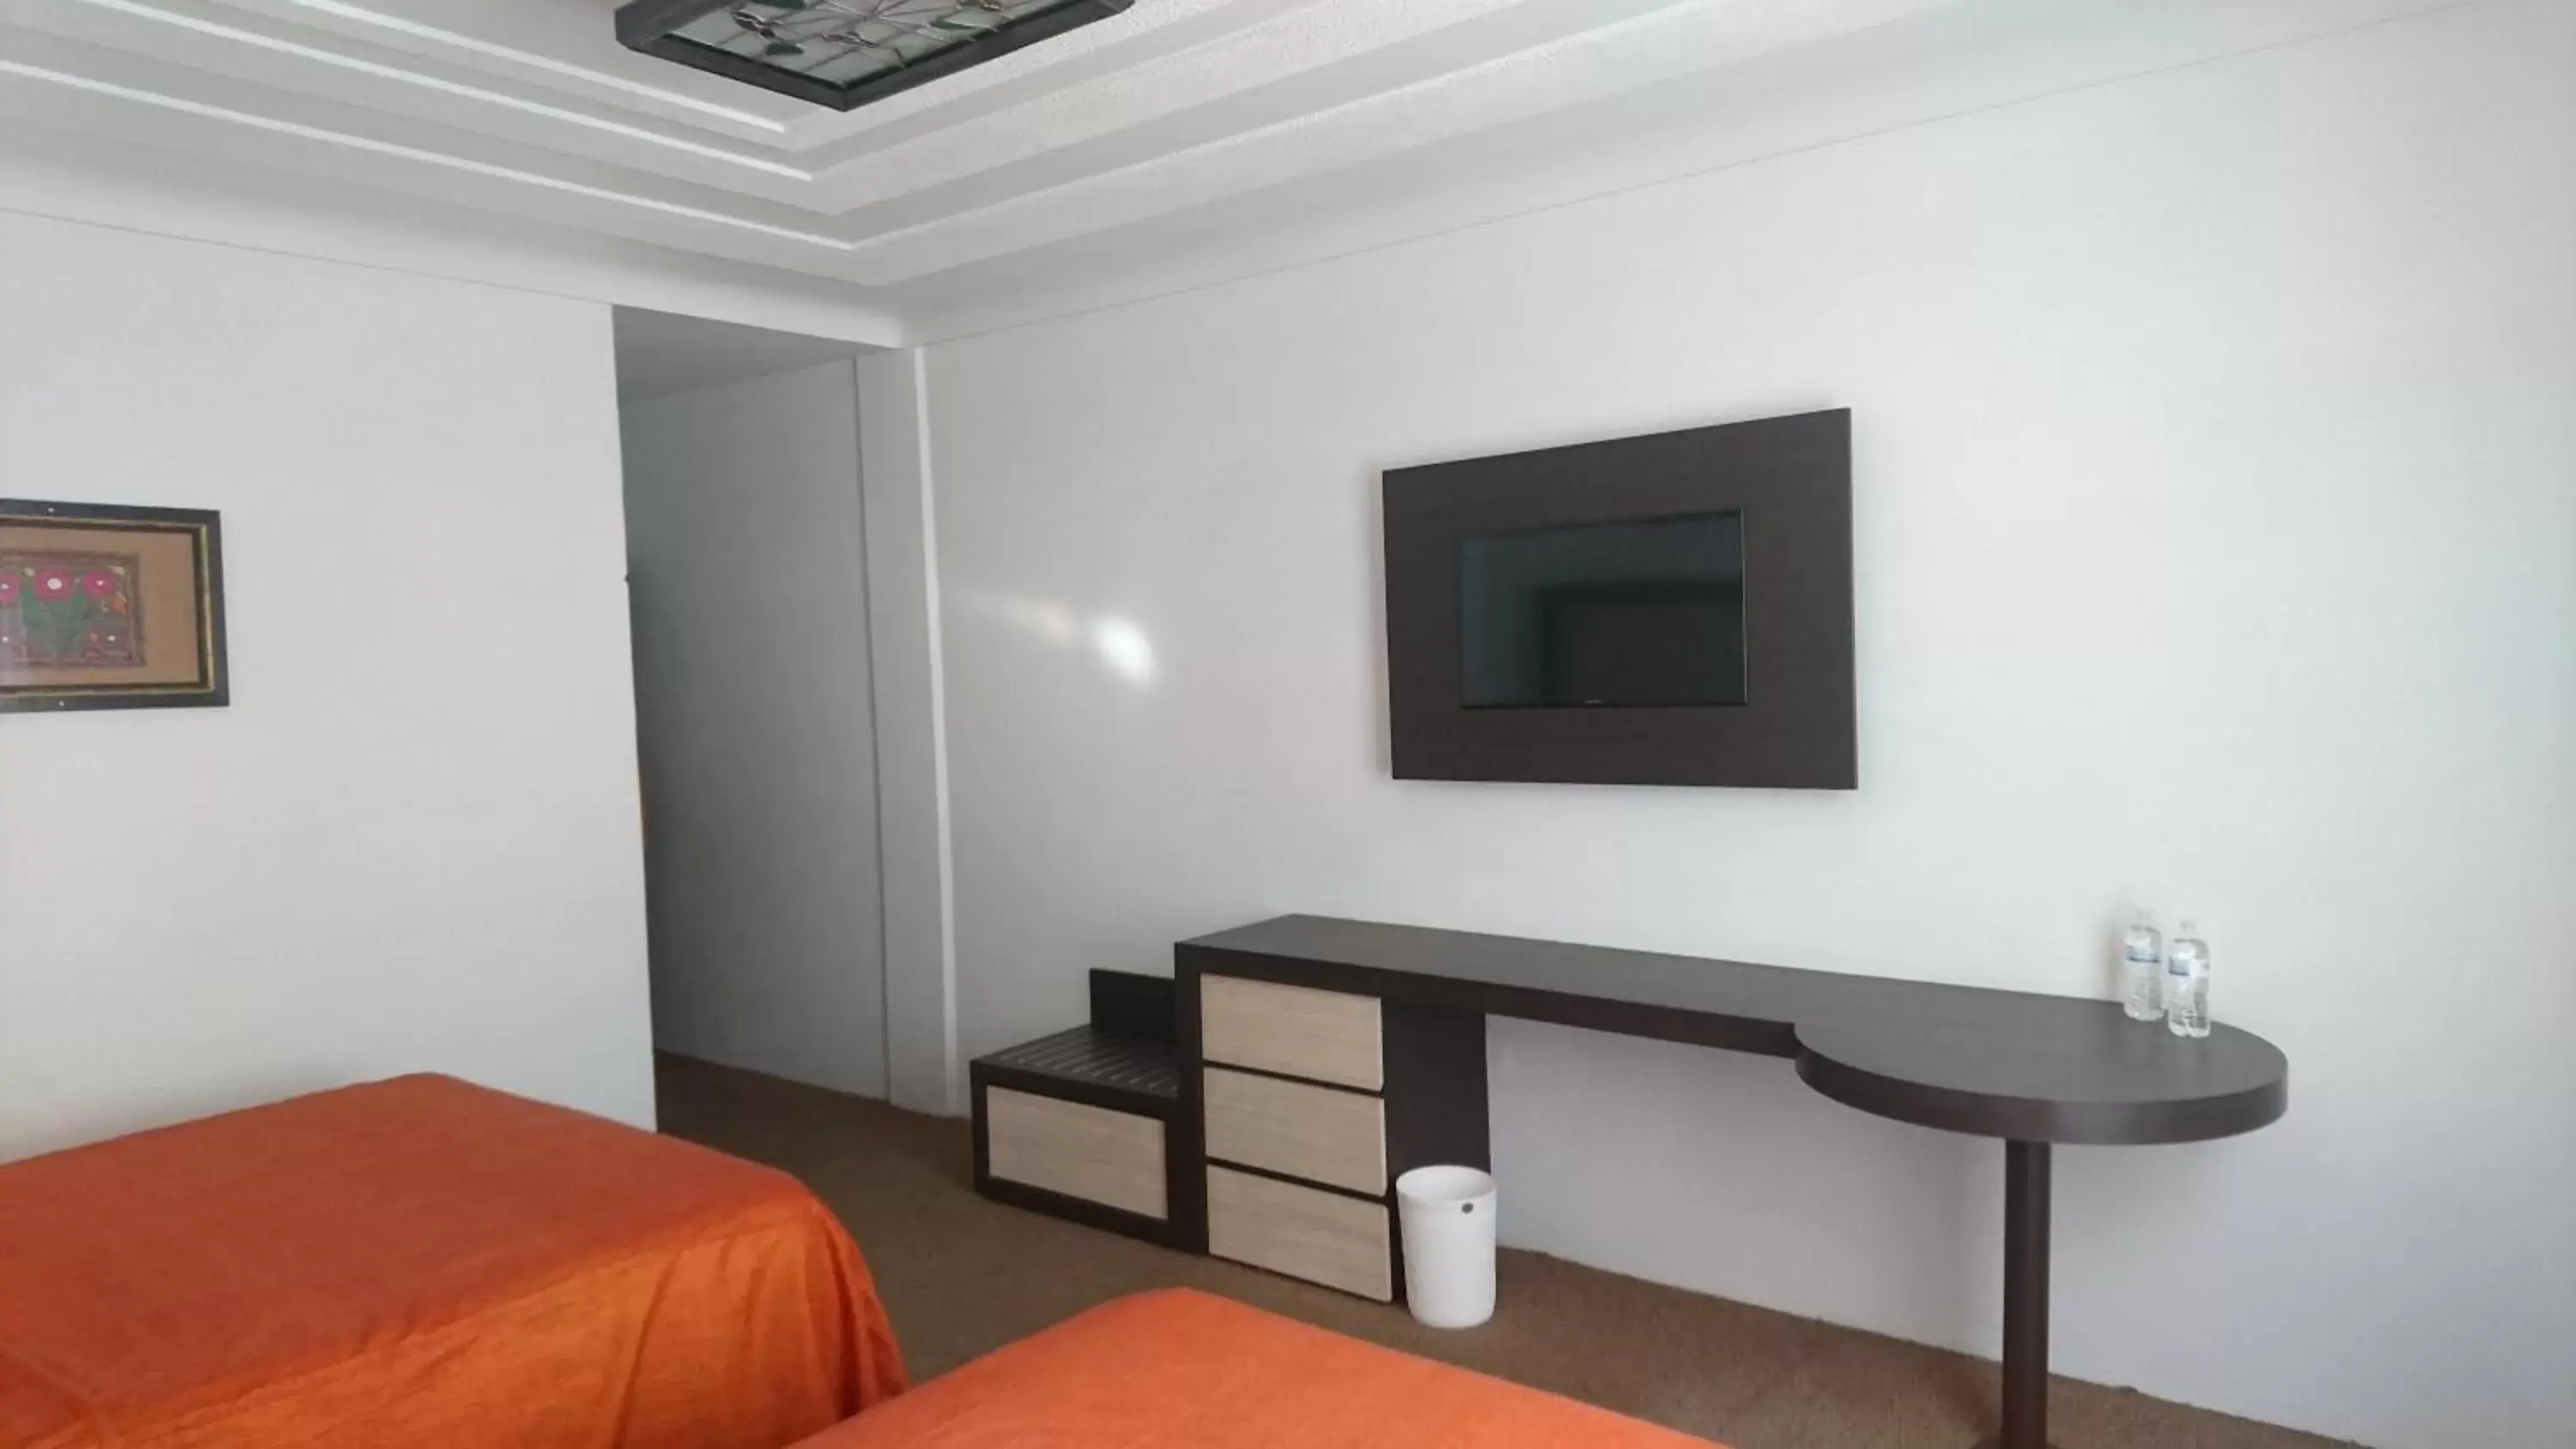 Bedroom in Hotel Paseo de la Presa